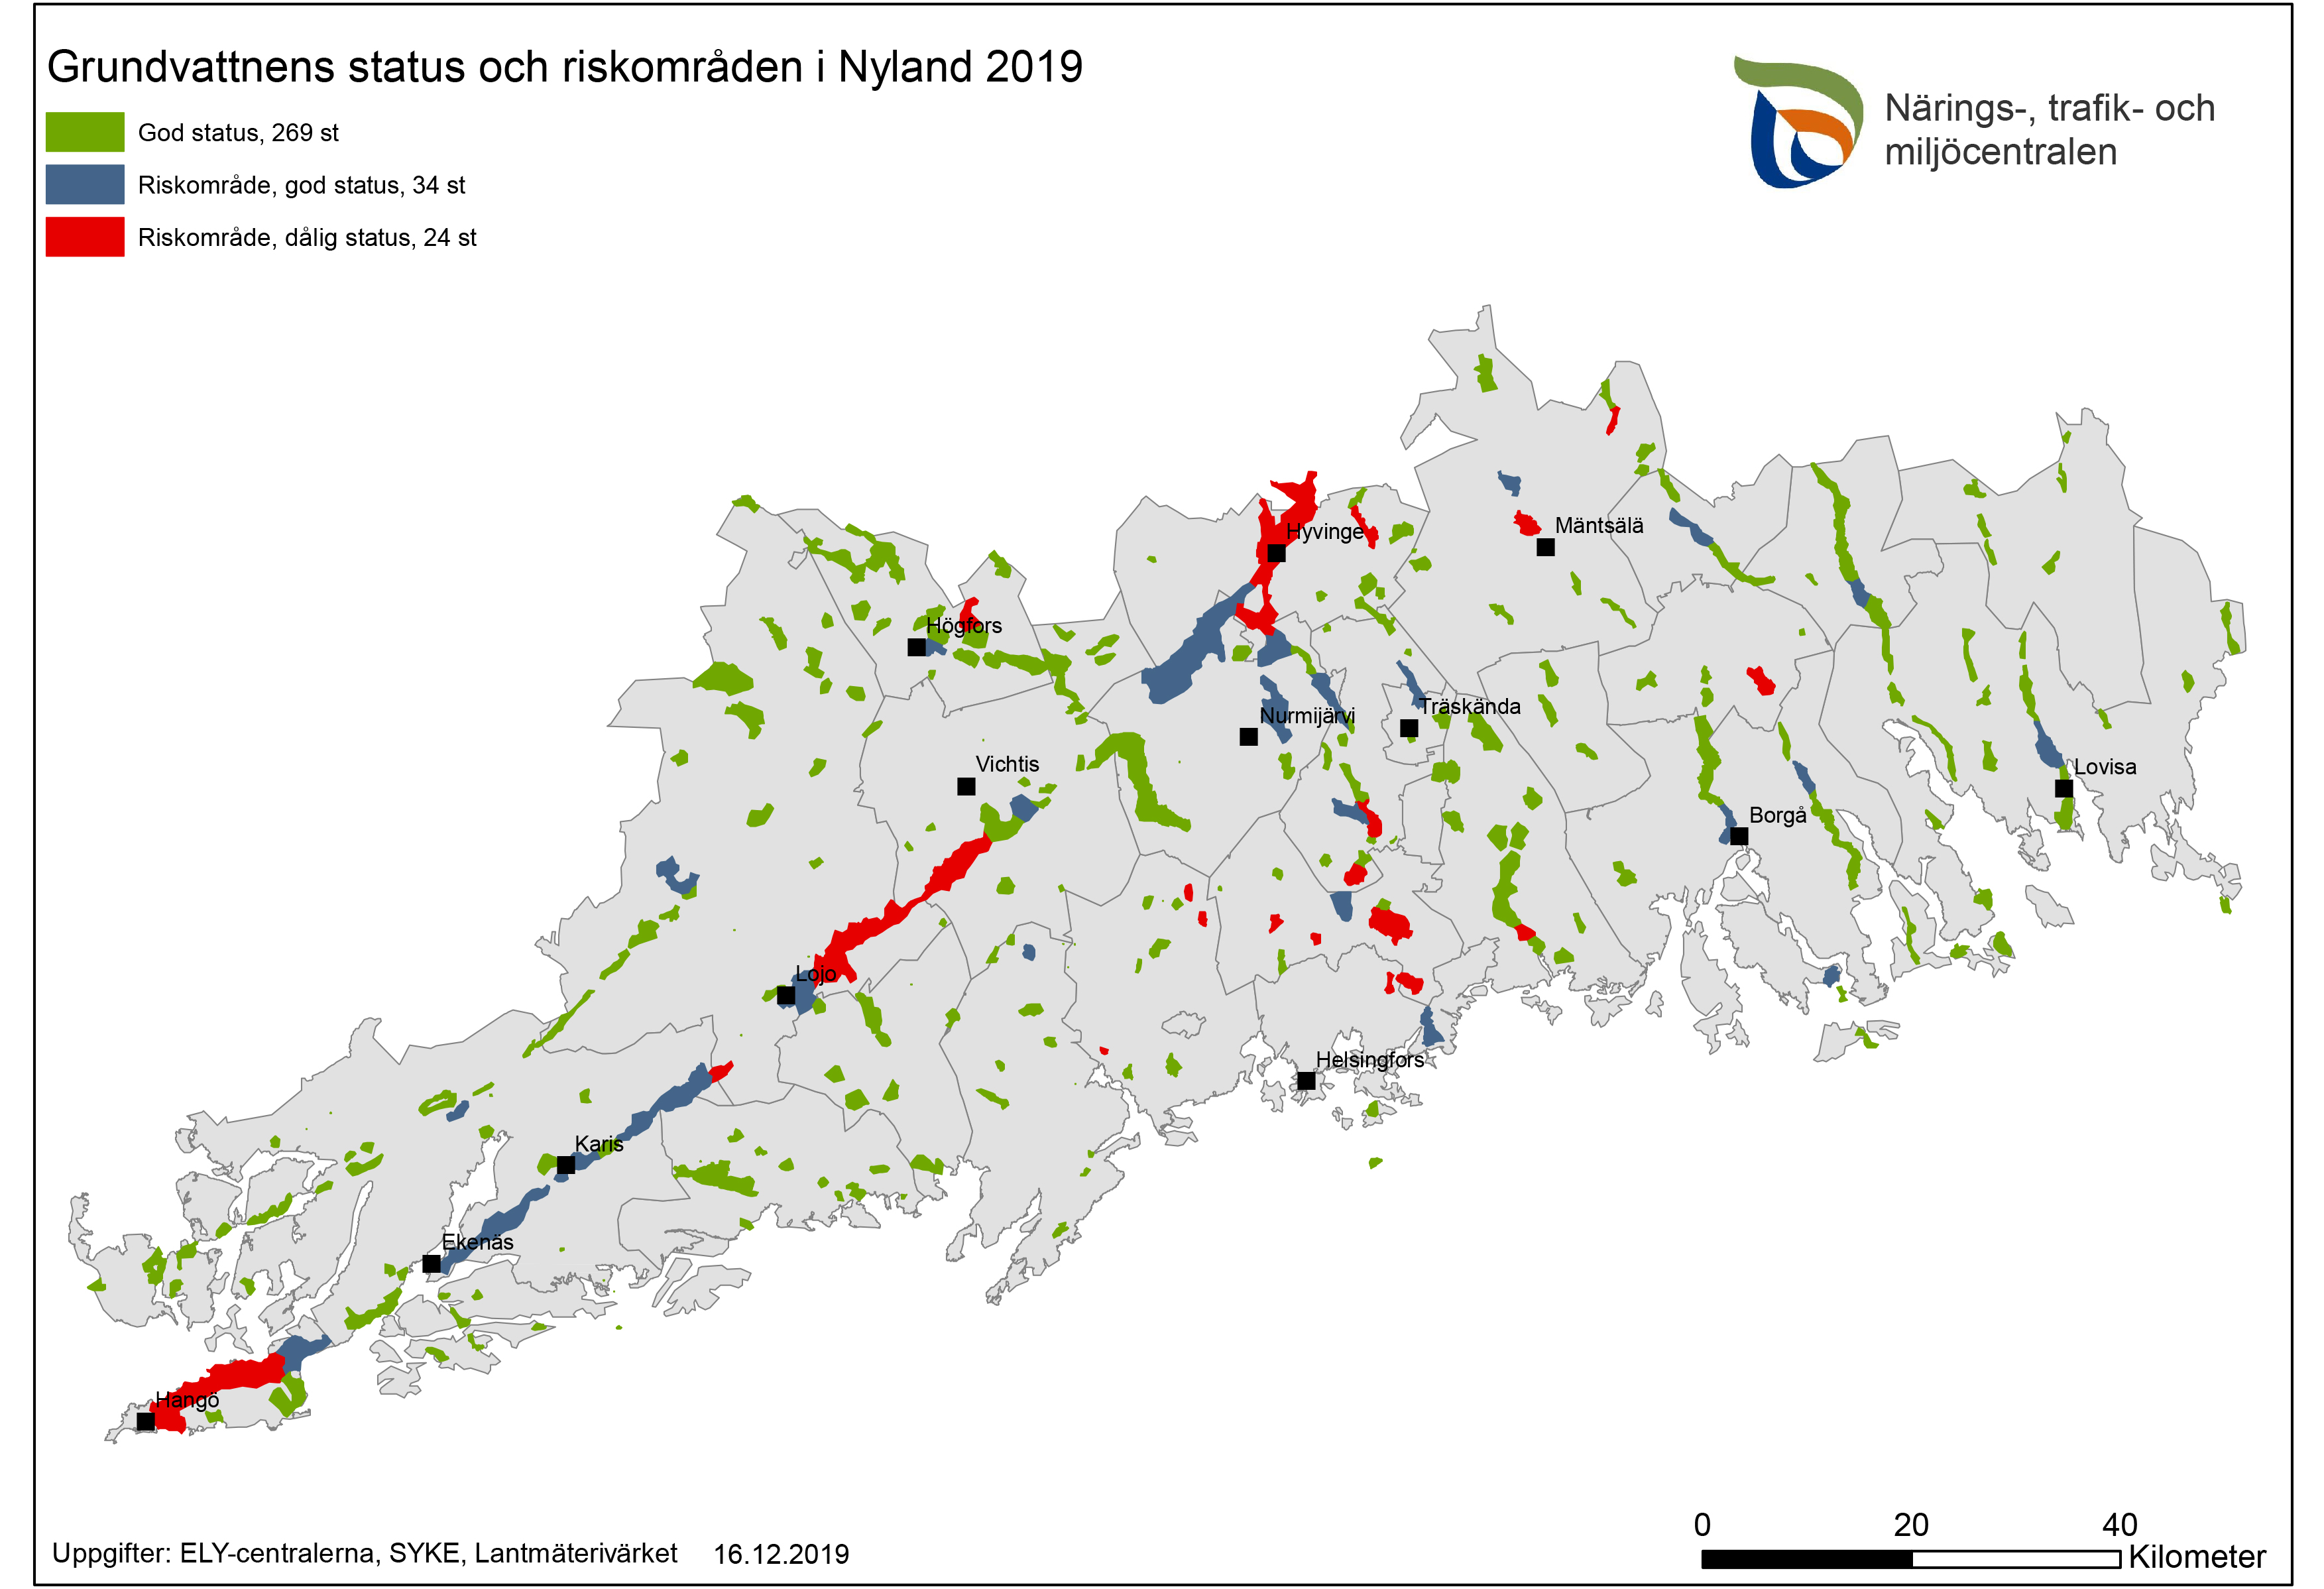 Karta över grundvattnens status och riskområden 2019.